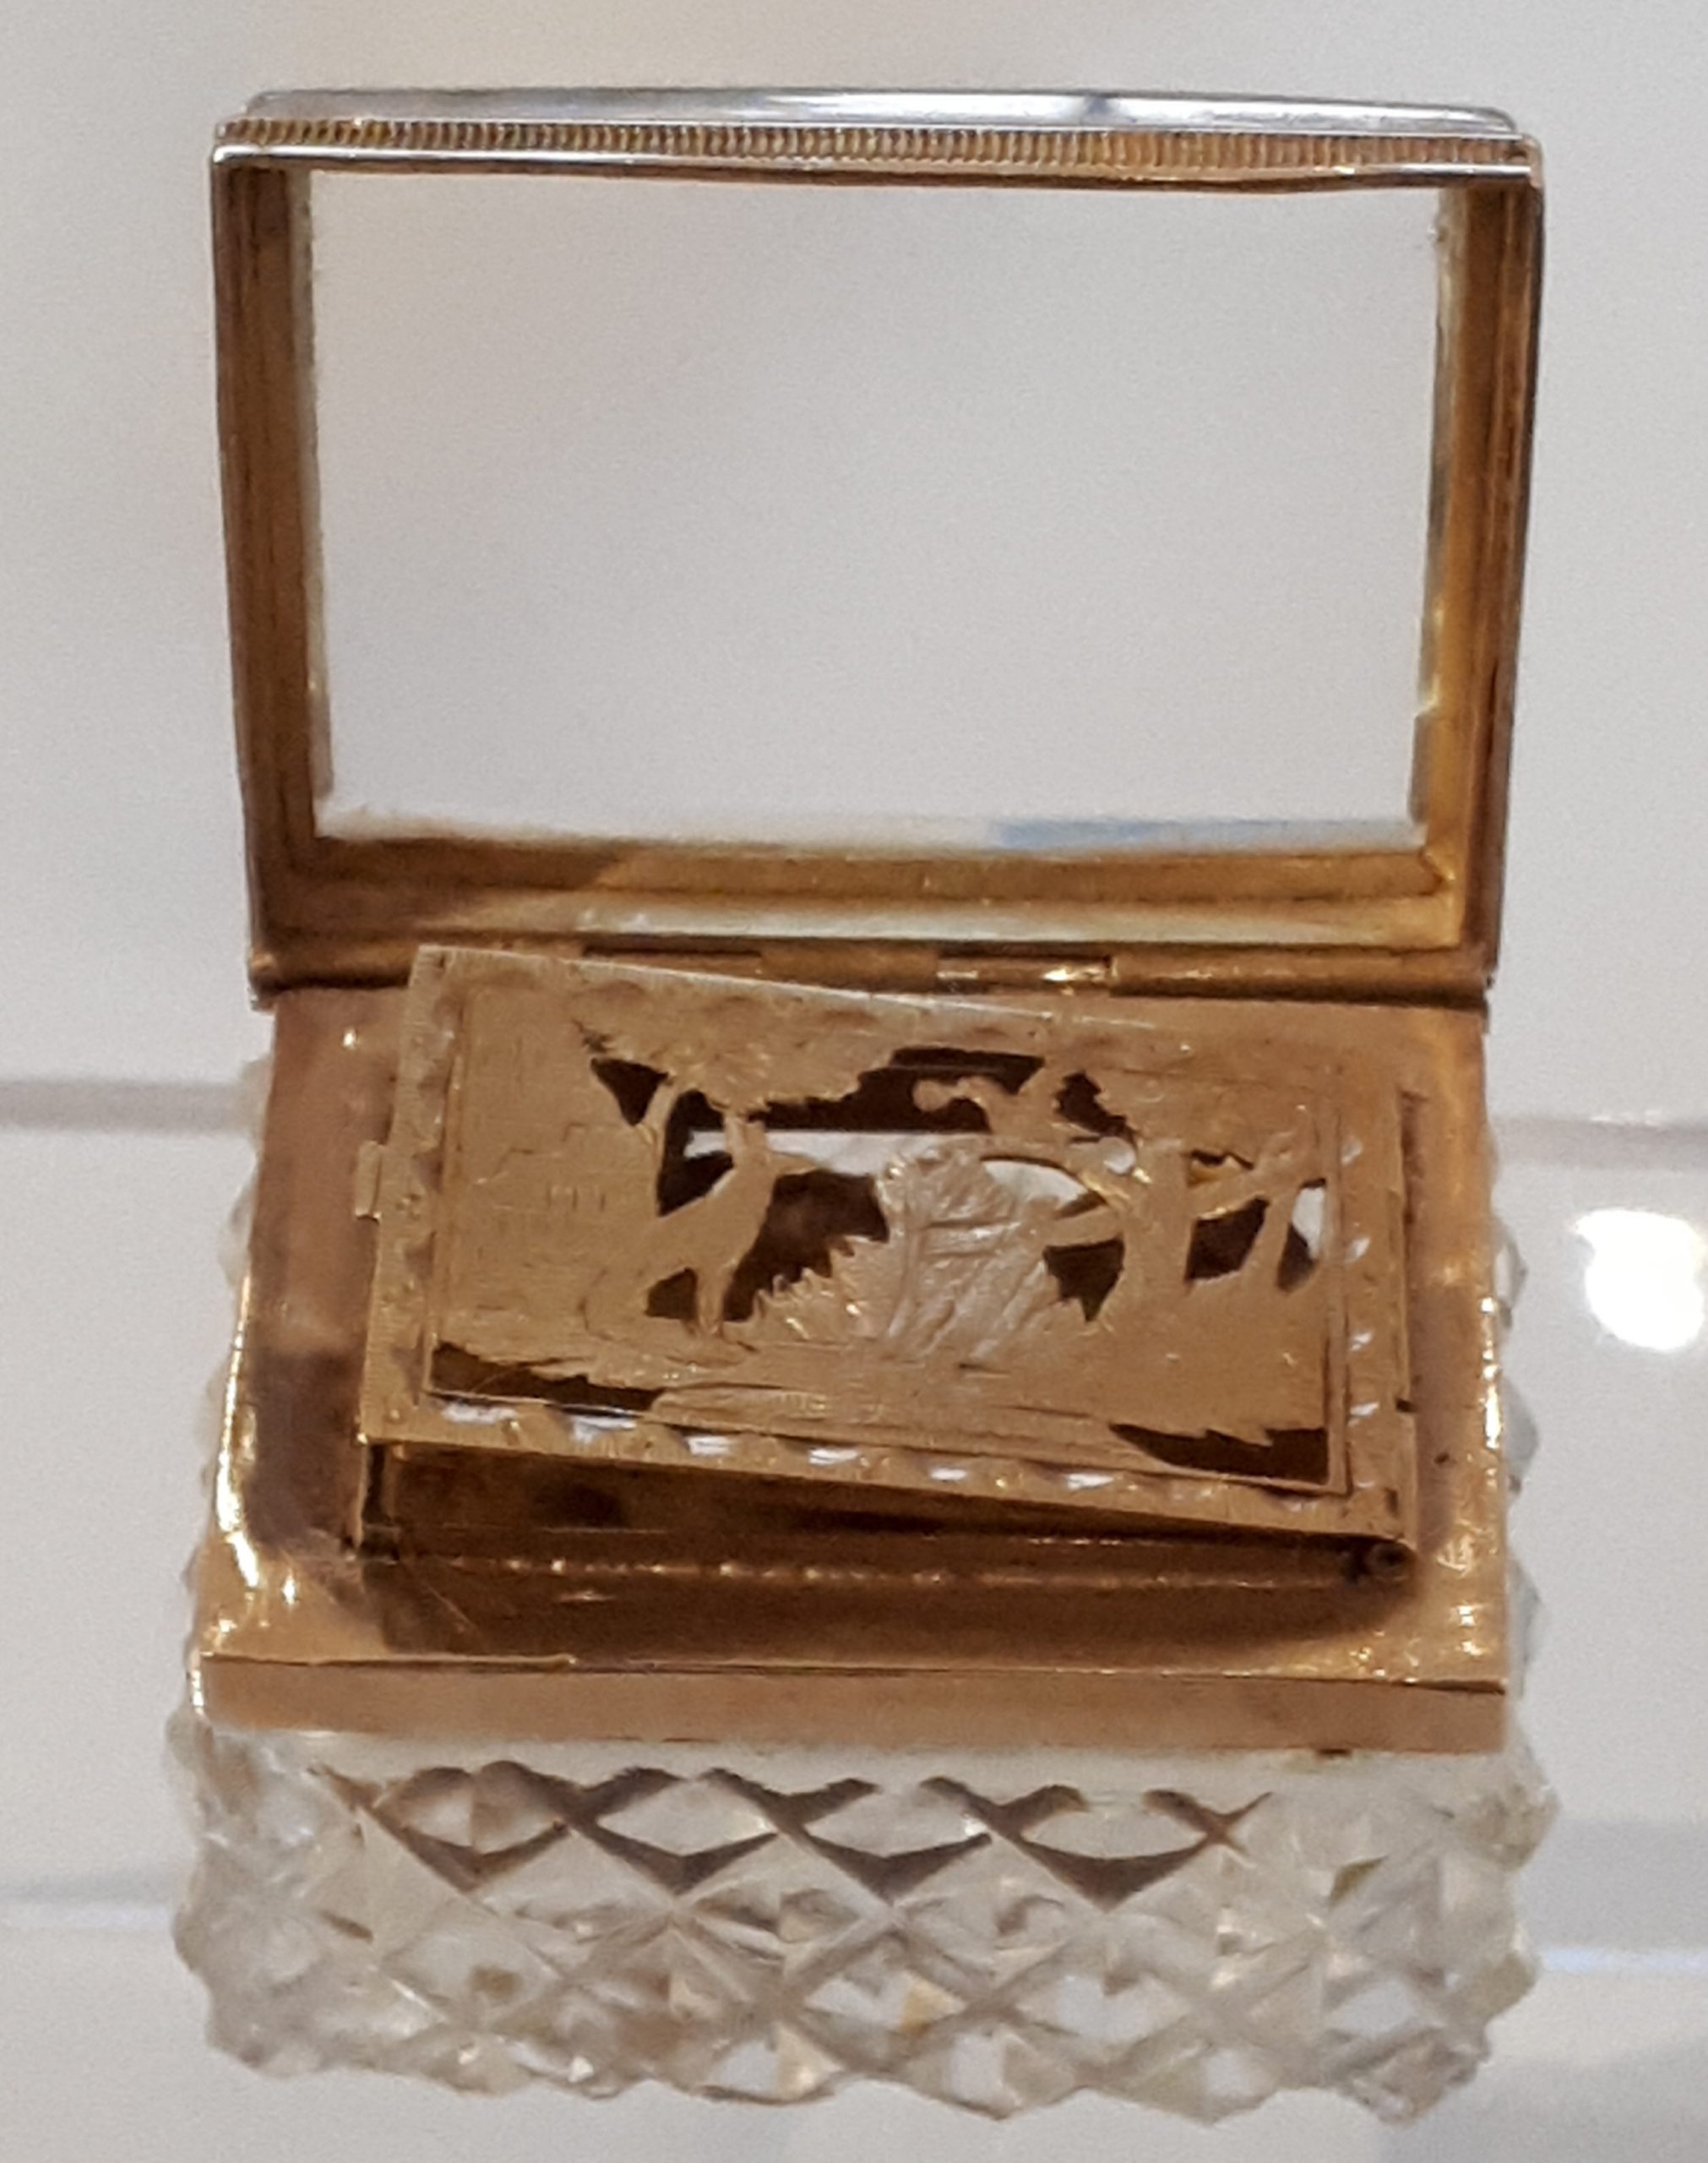 Vinaigrette, 1er quart du XIXe siècle, cristal taillé et or, sans numéro d’inventaire